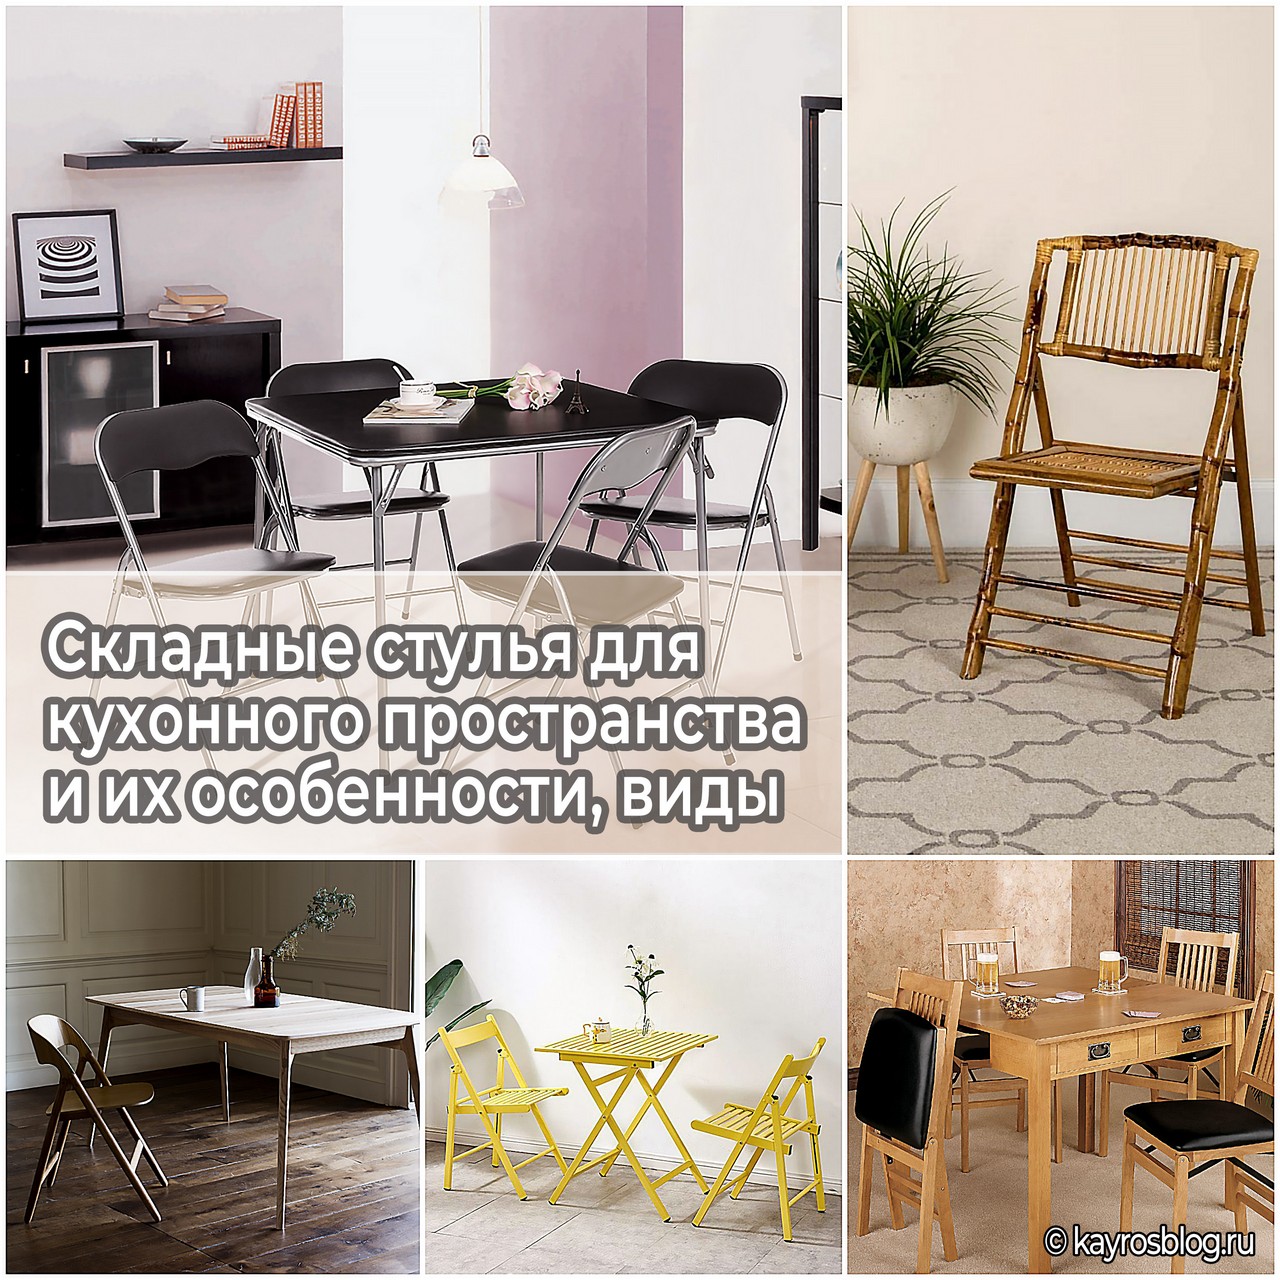 Складные стулья для кухонного пространства и их особенности, виды